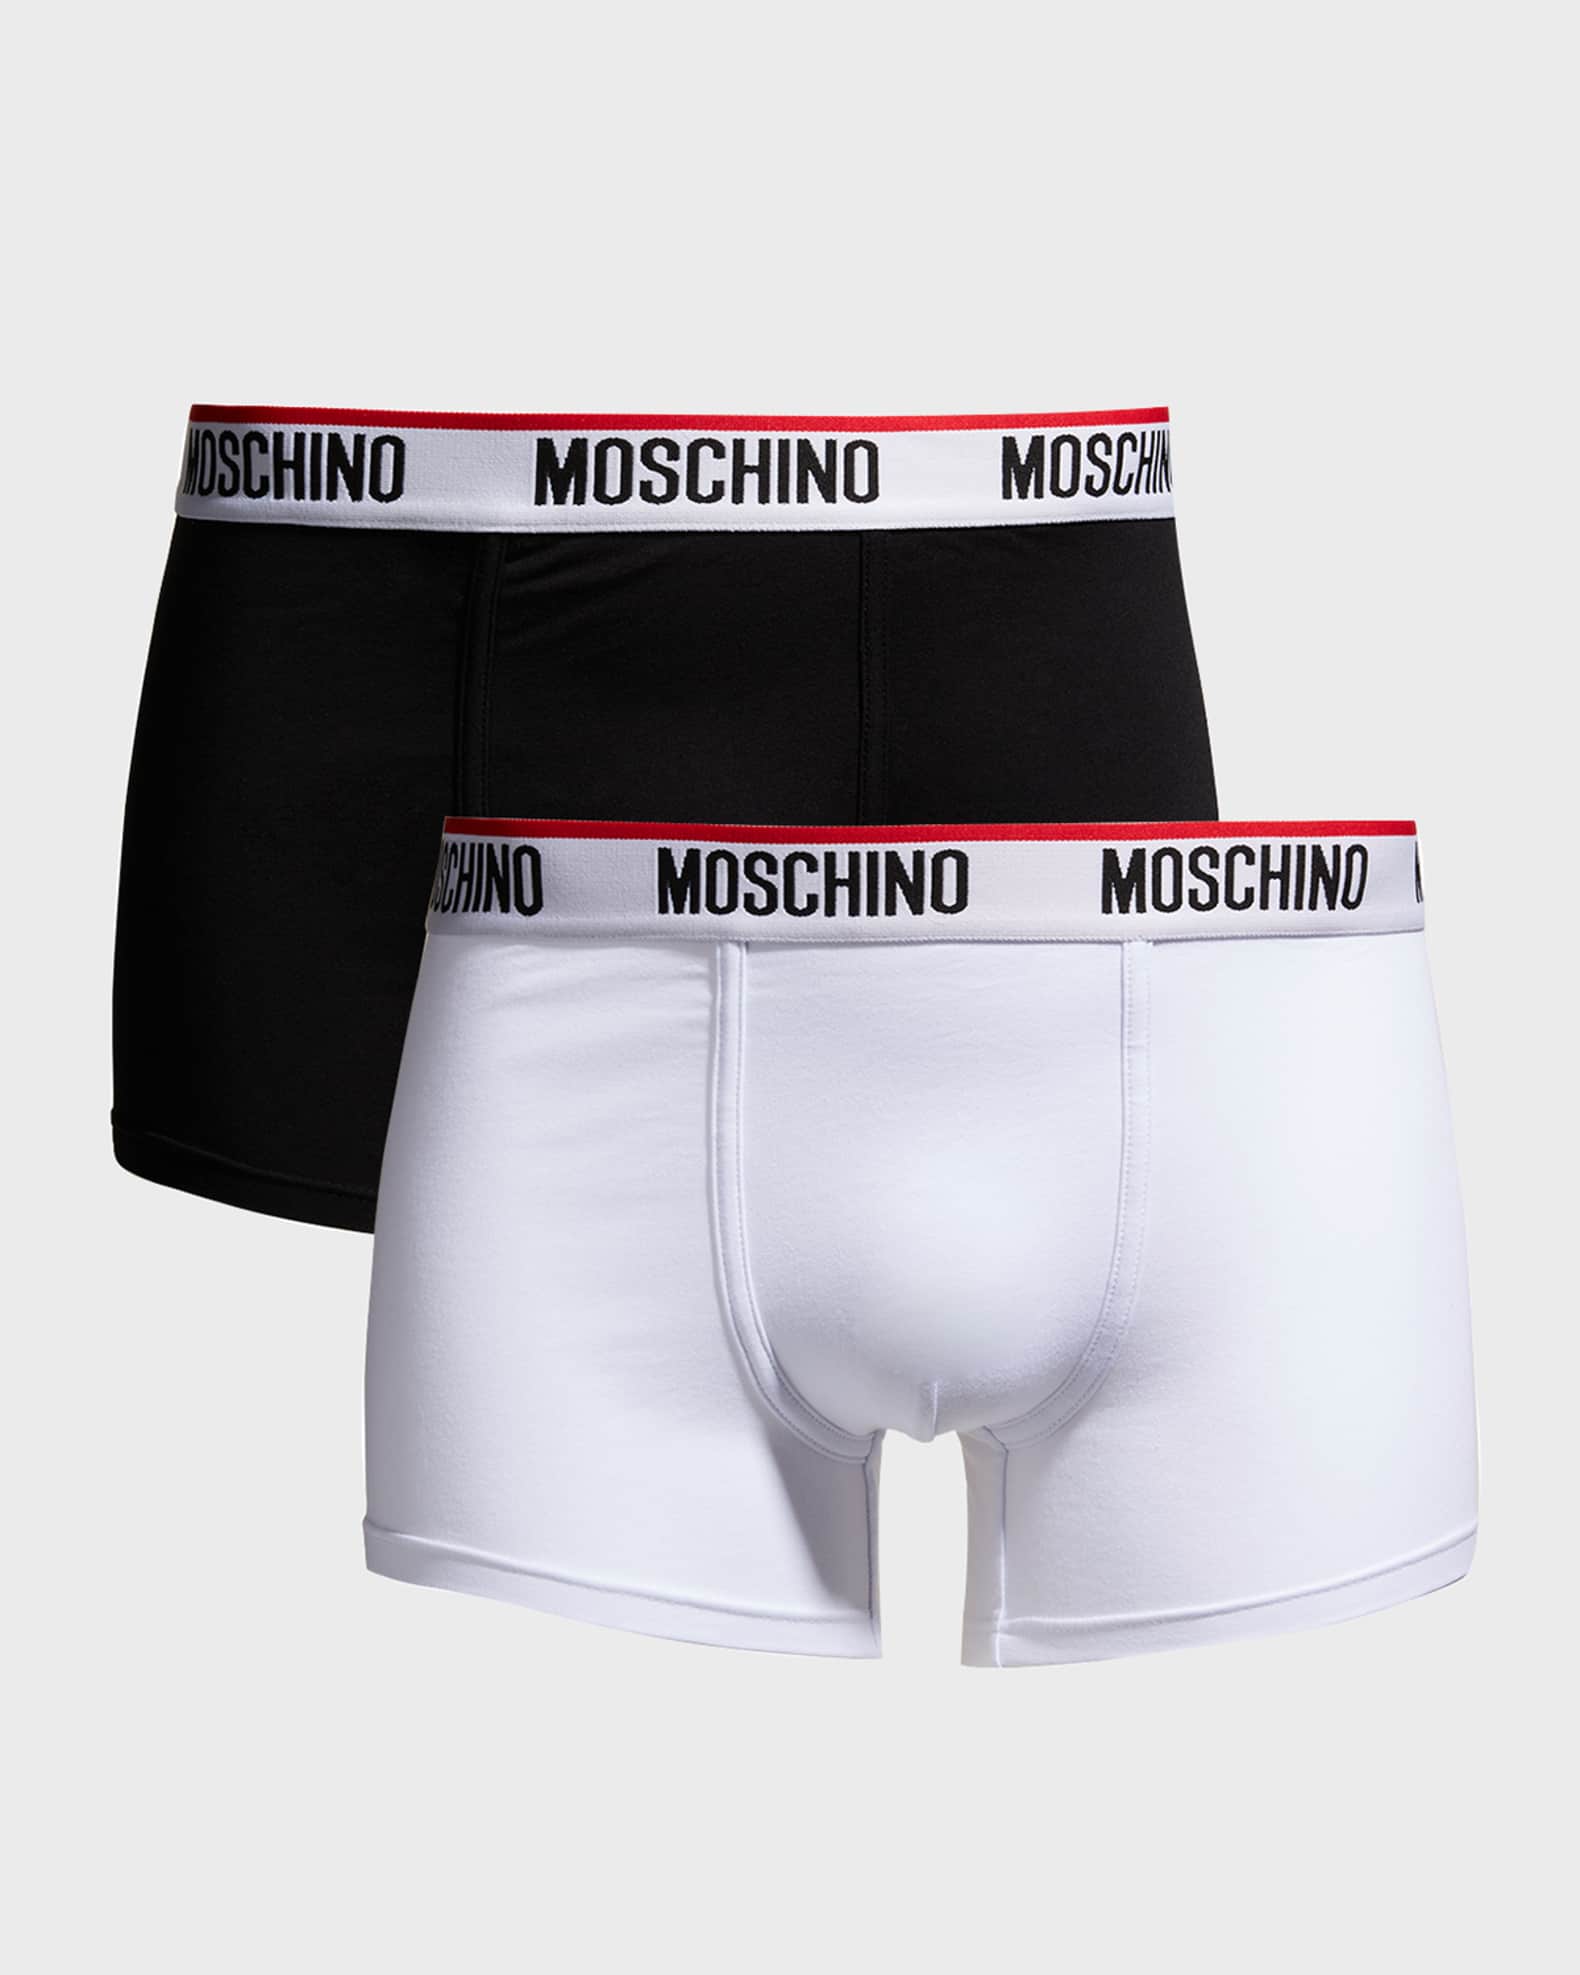 Moschino Logo Band Briefs - Set Of 2 for Men